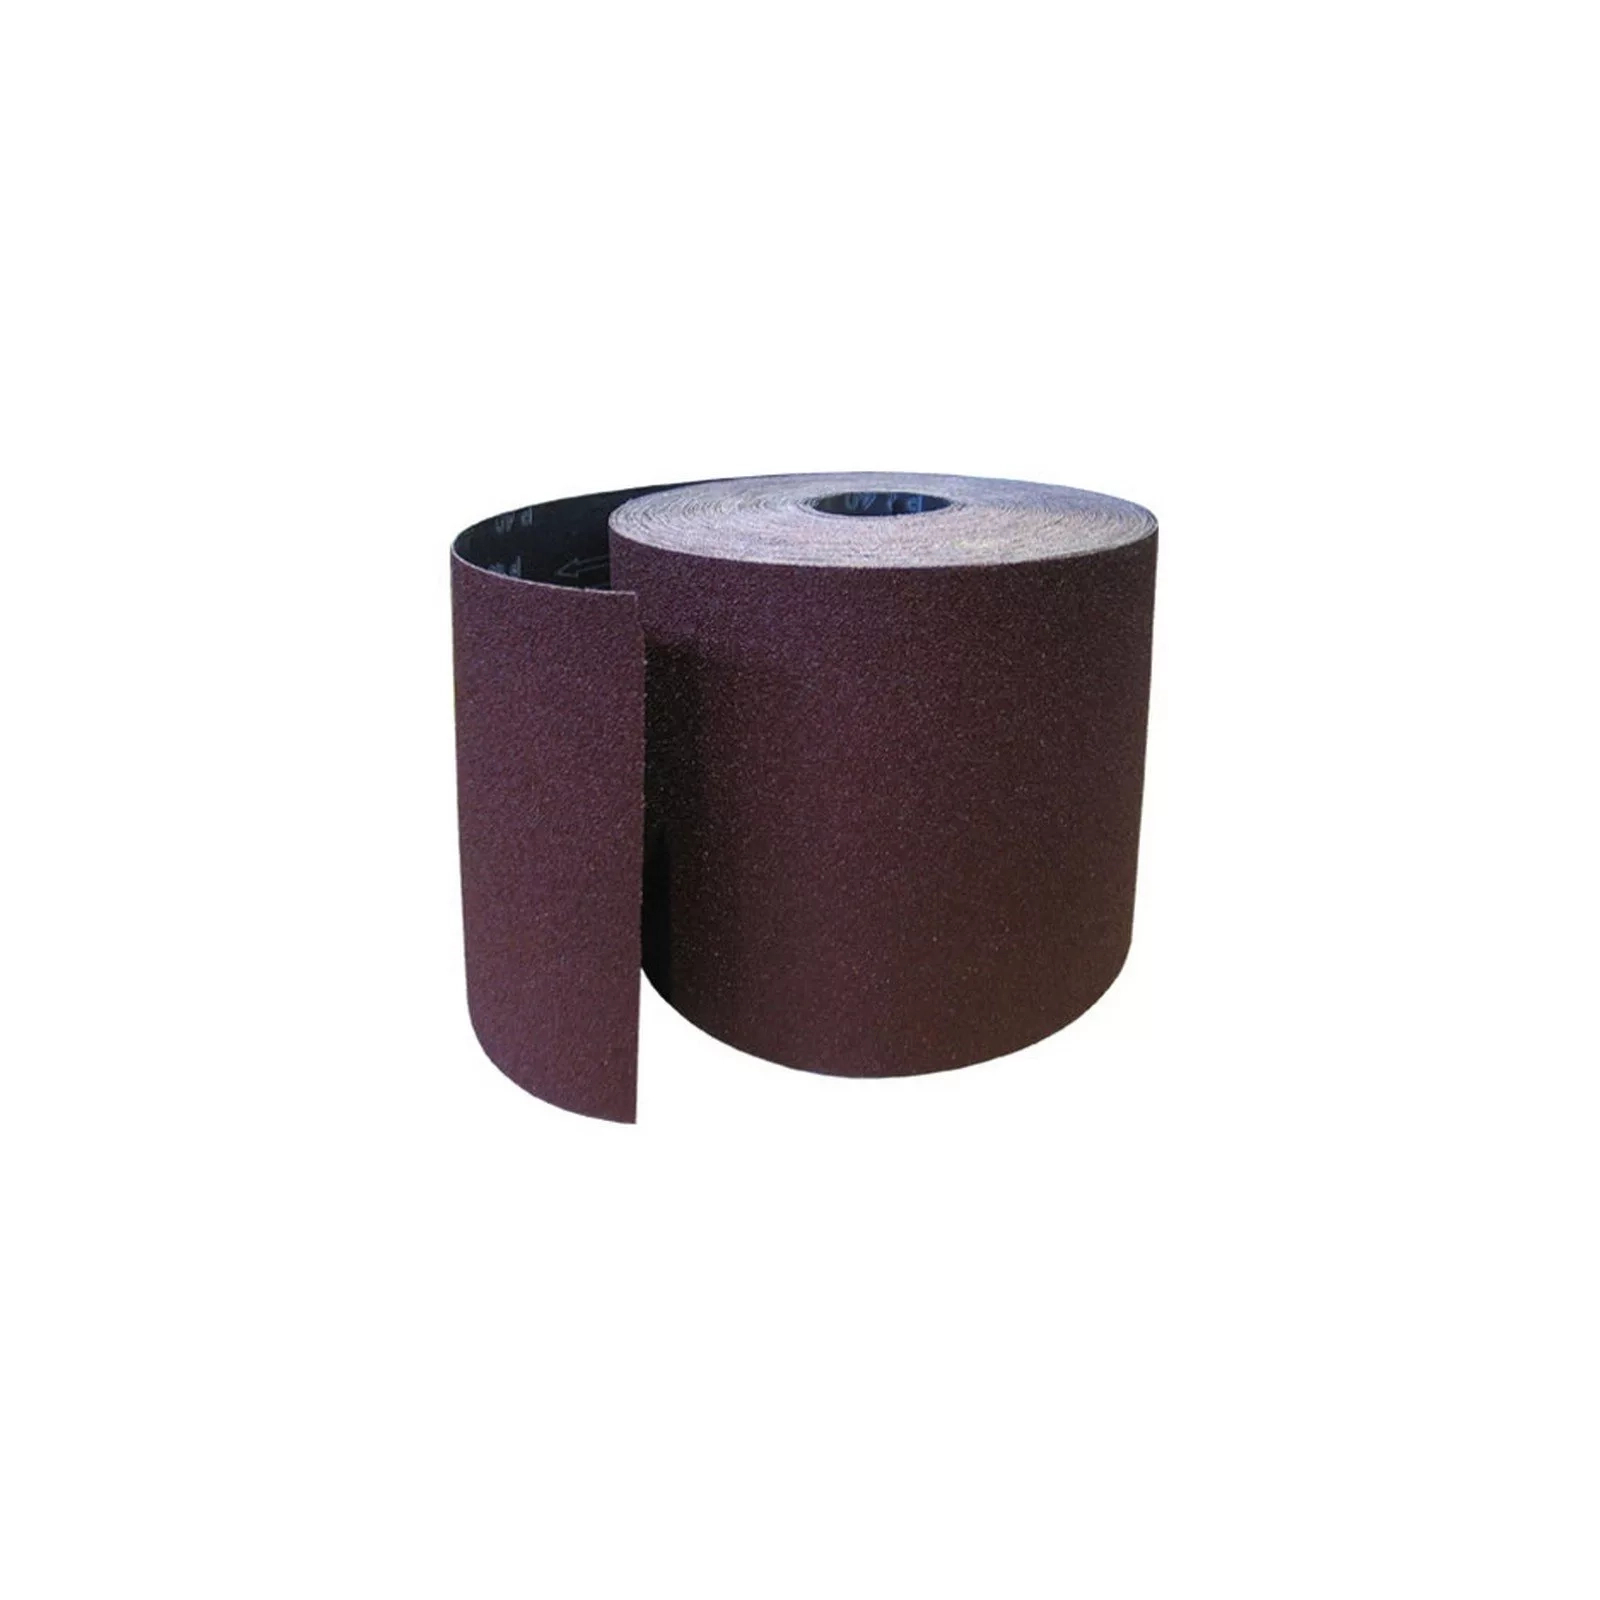 Наждачная бумага HAISSER бумажная основа – 115мм x 5м, зерно 180 (118537)